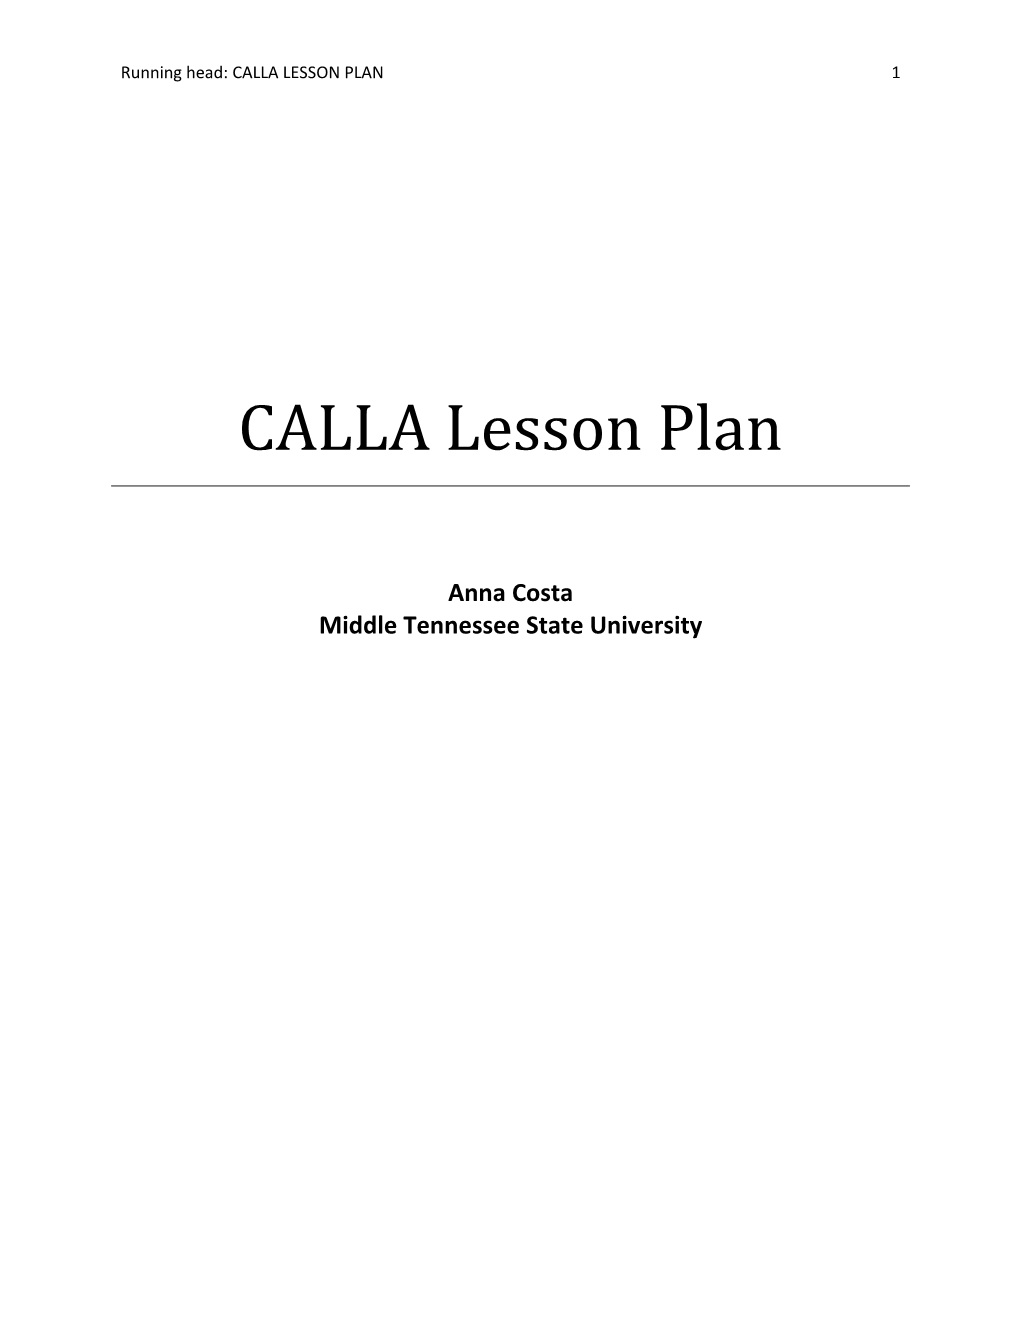 CALLA Lesson Plan